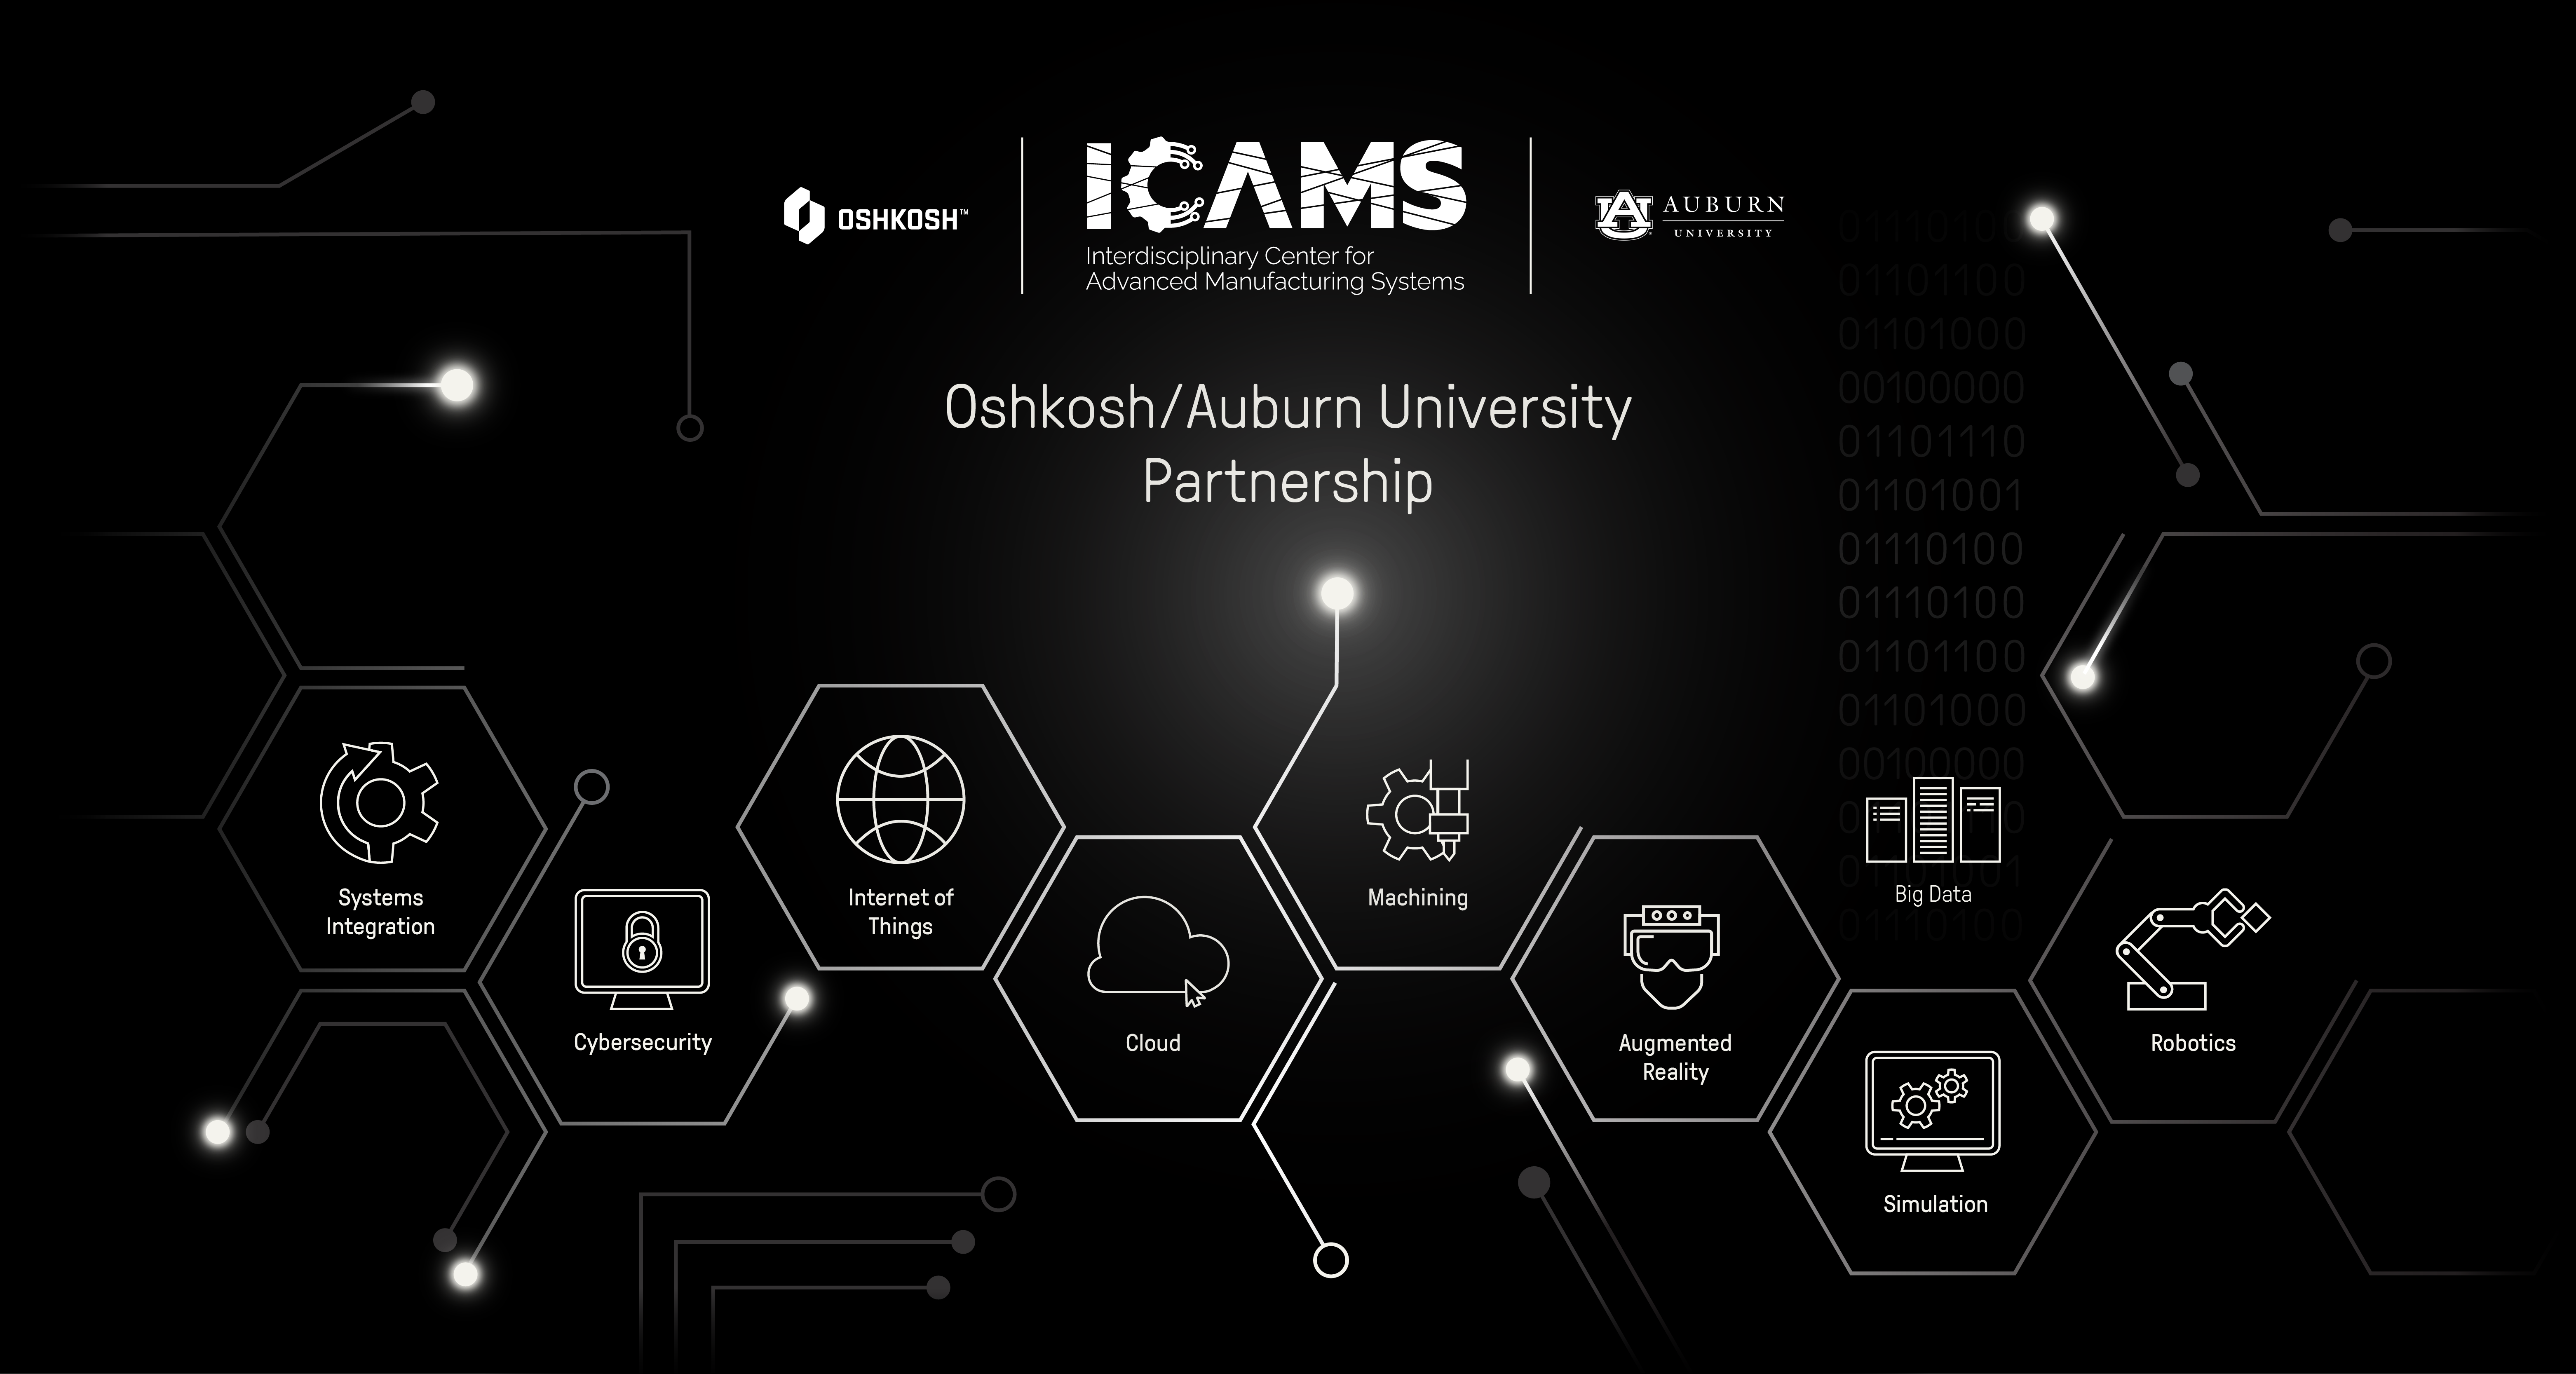 Black background with white digital icons with the Oshkosh logo, ICAMS logo and Auburn logo. 